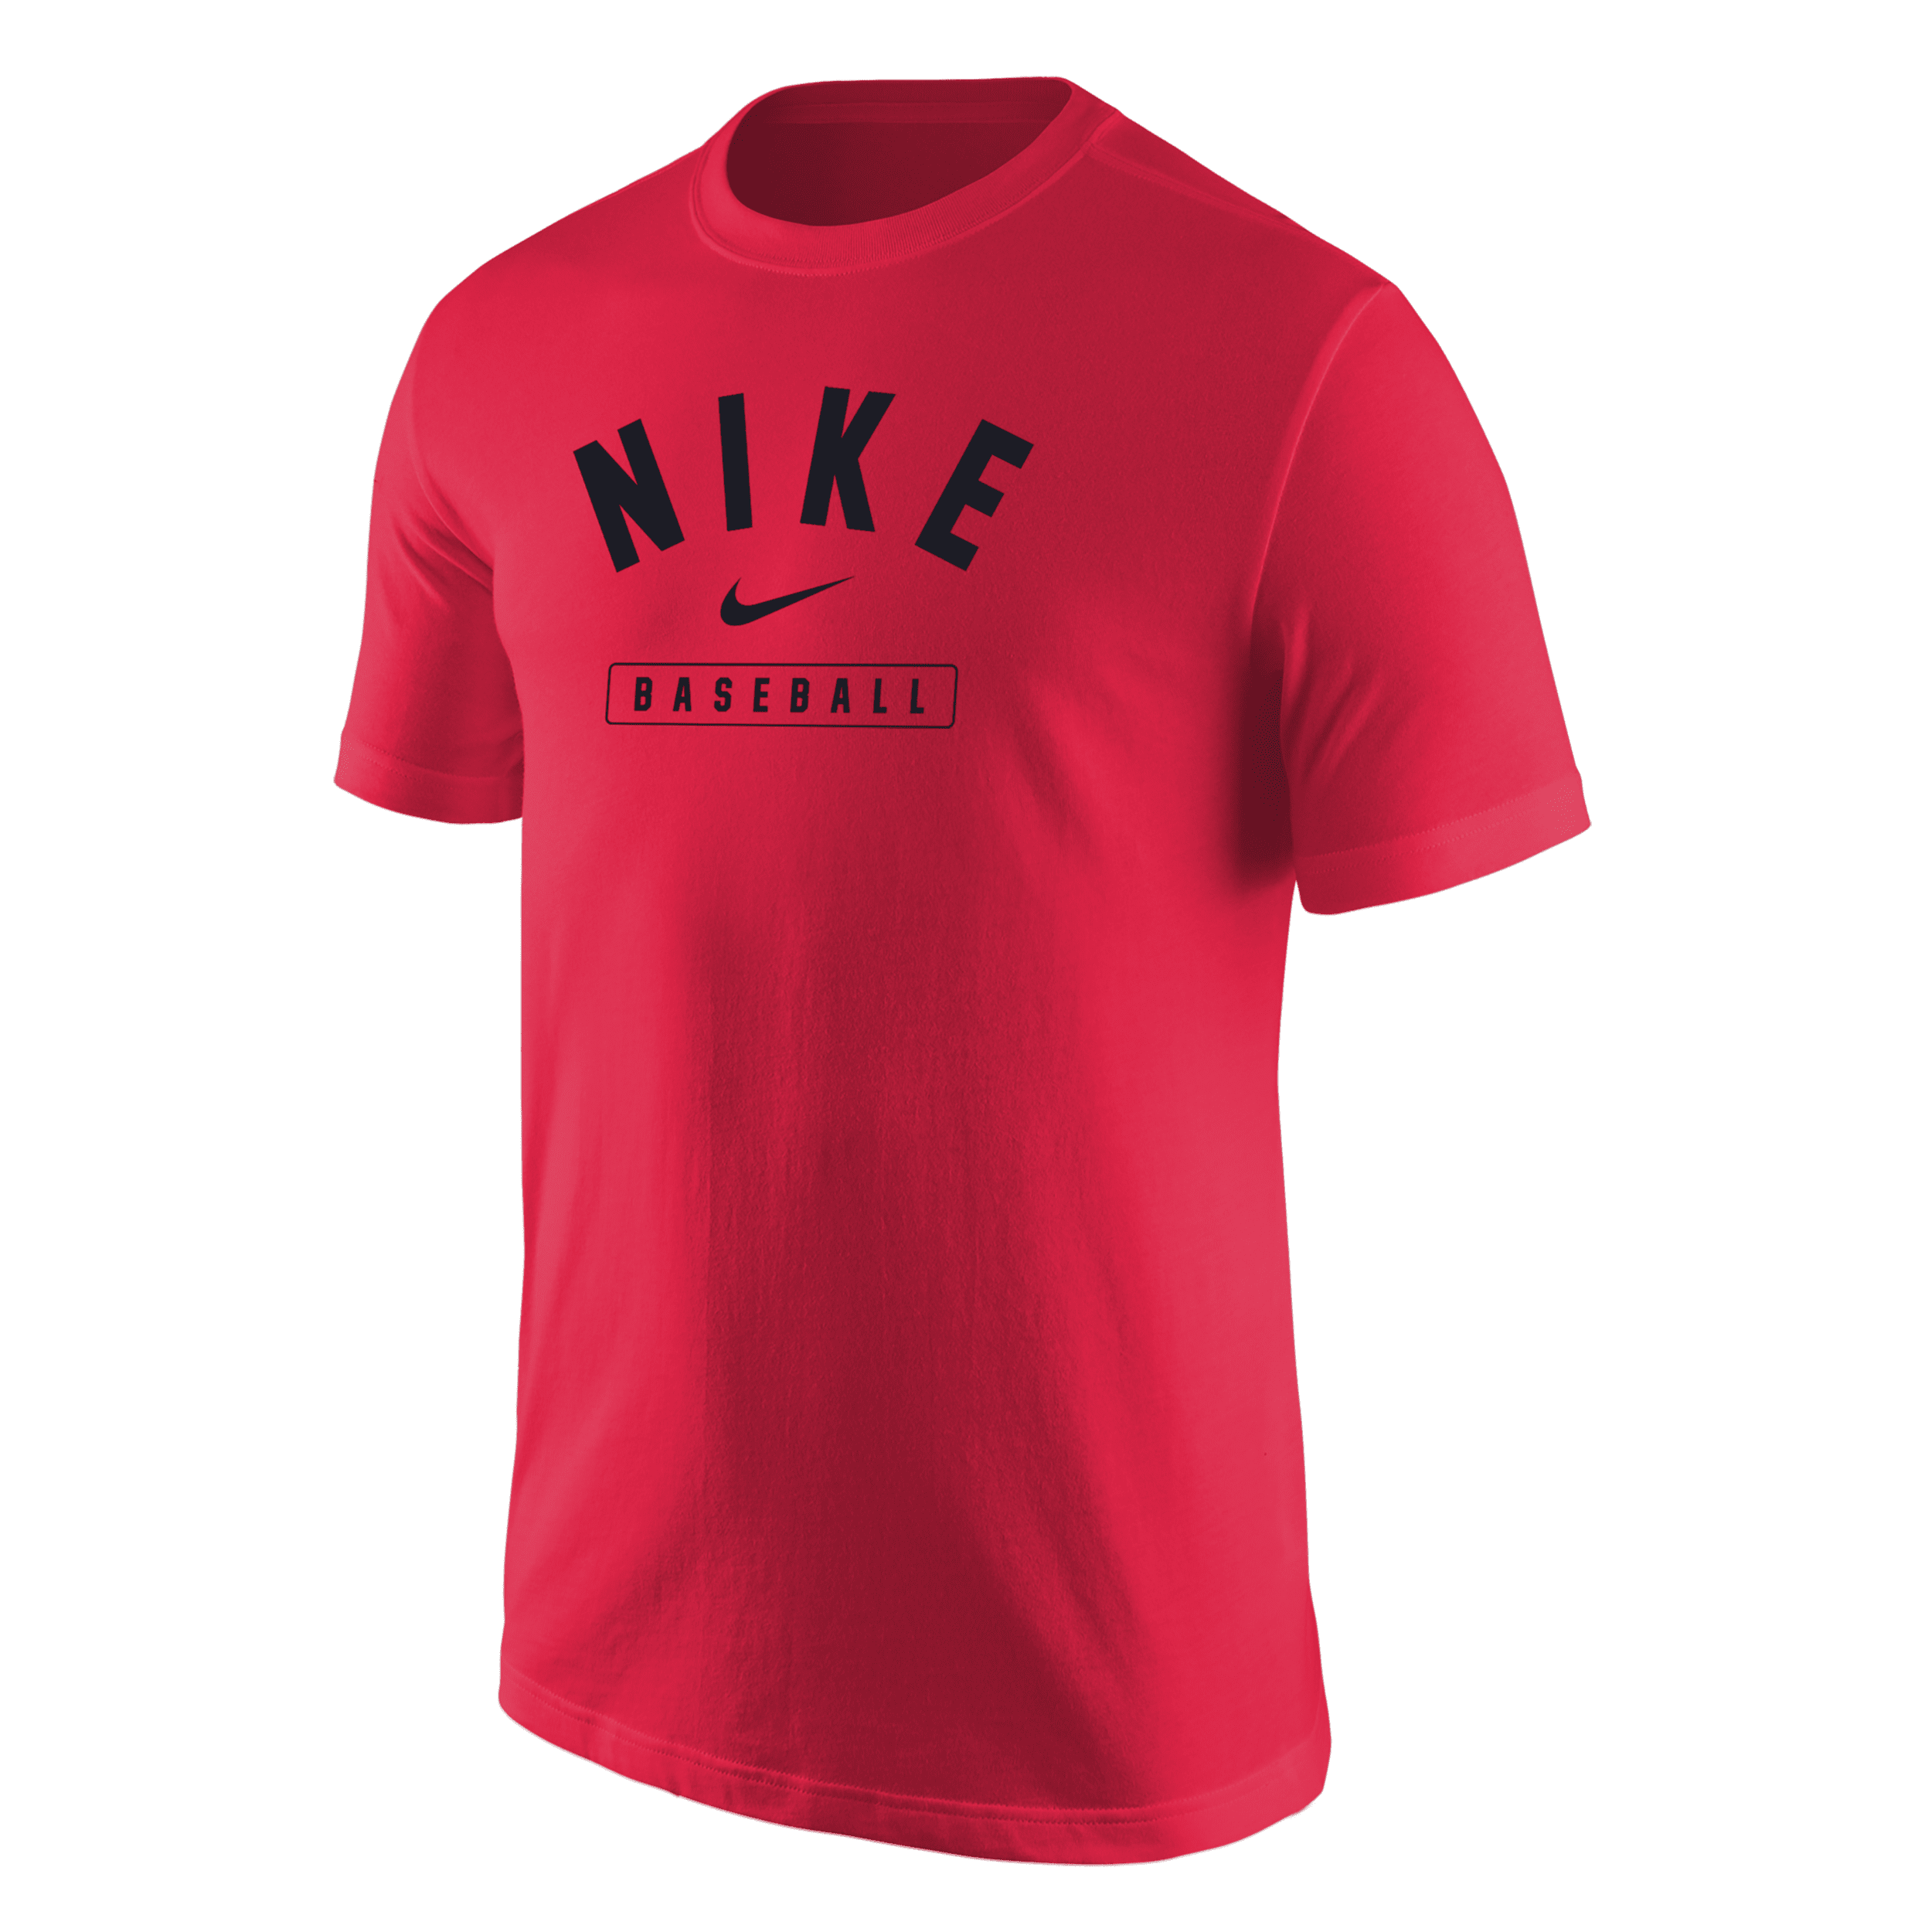 Nike Men's Baseball T-shirt In Red